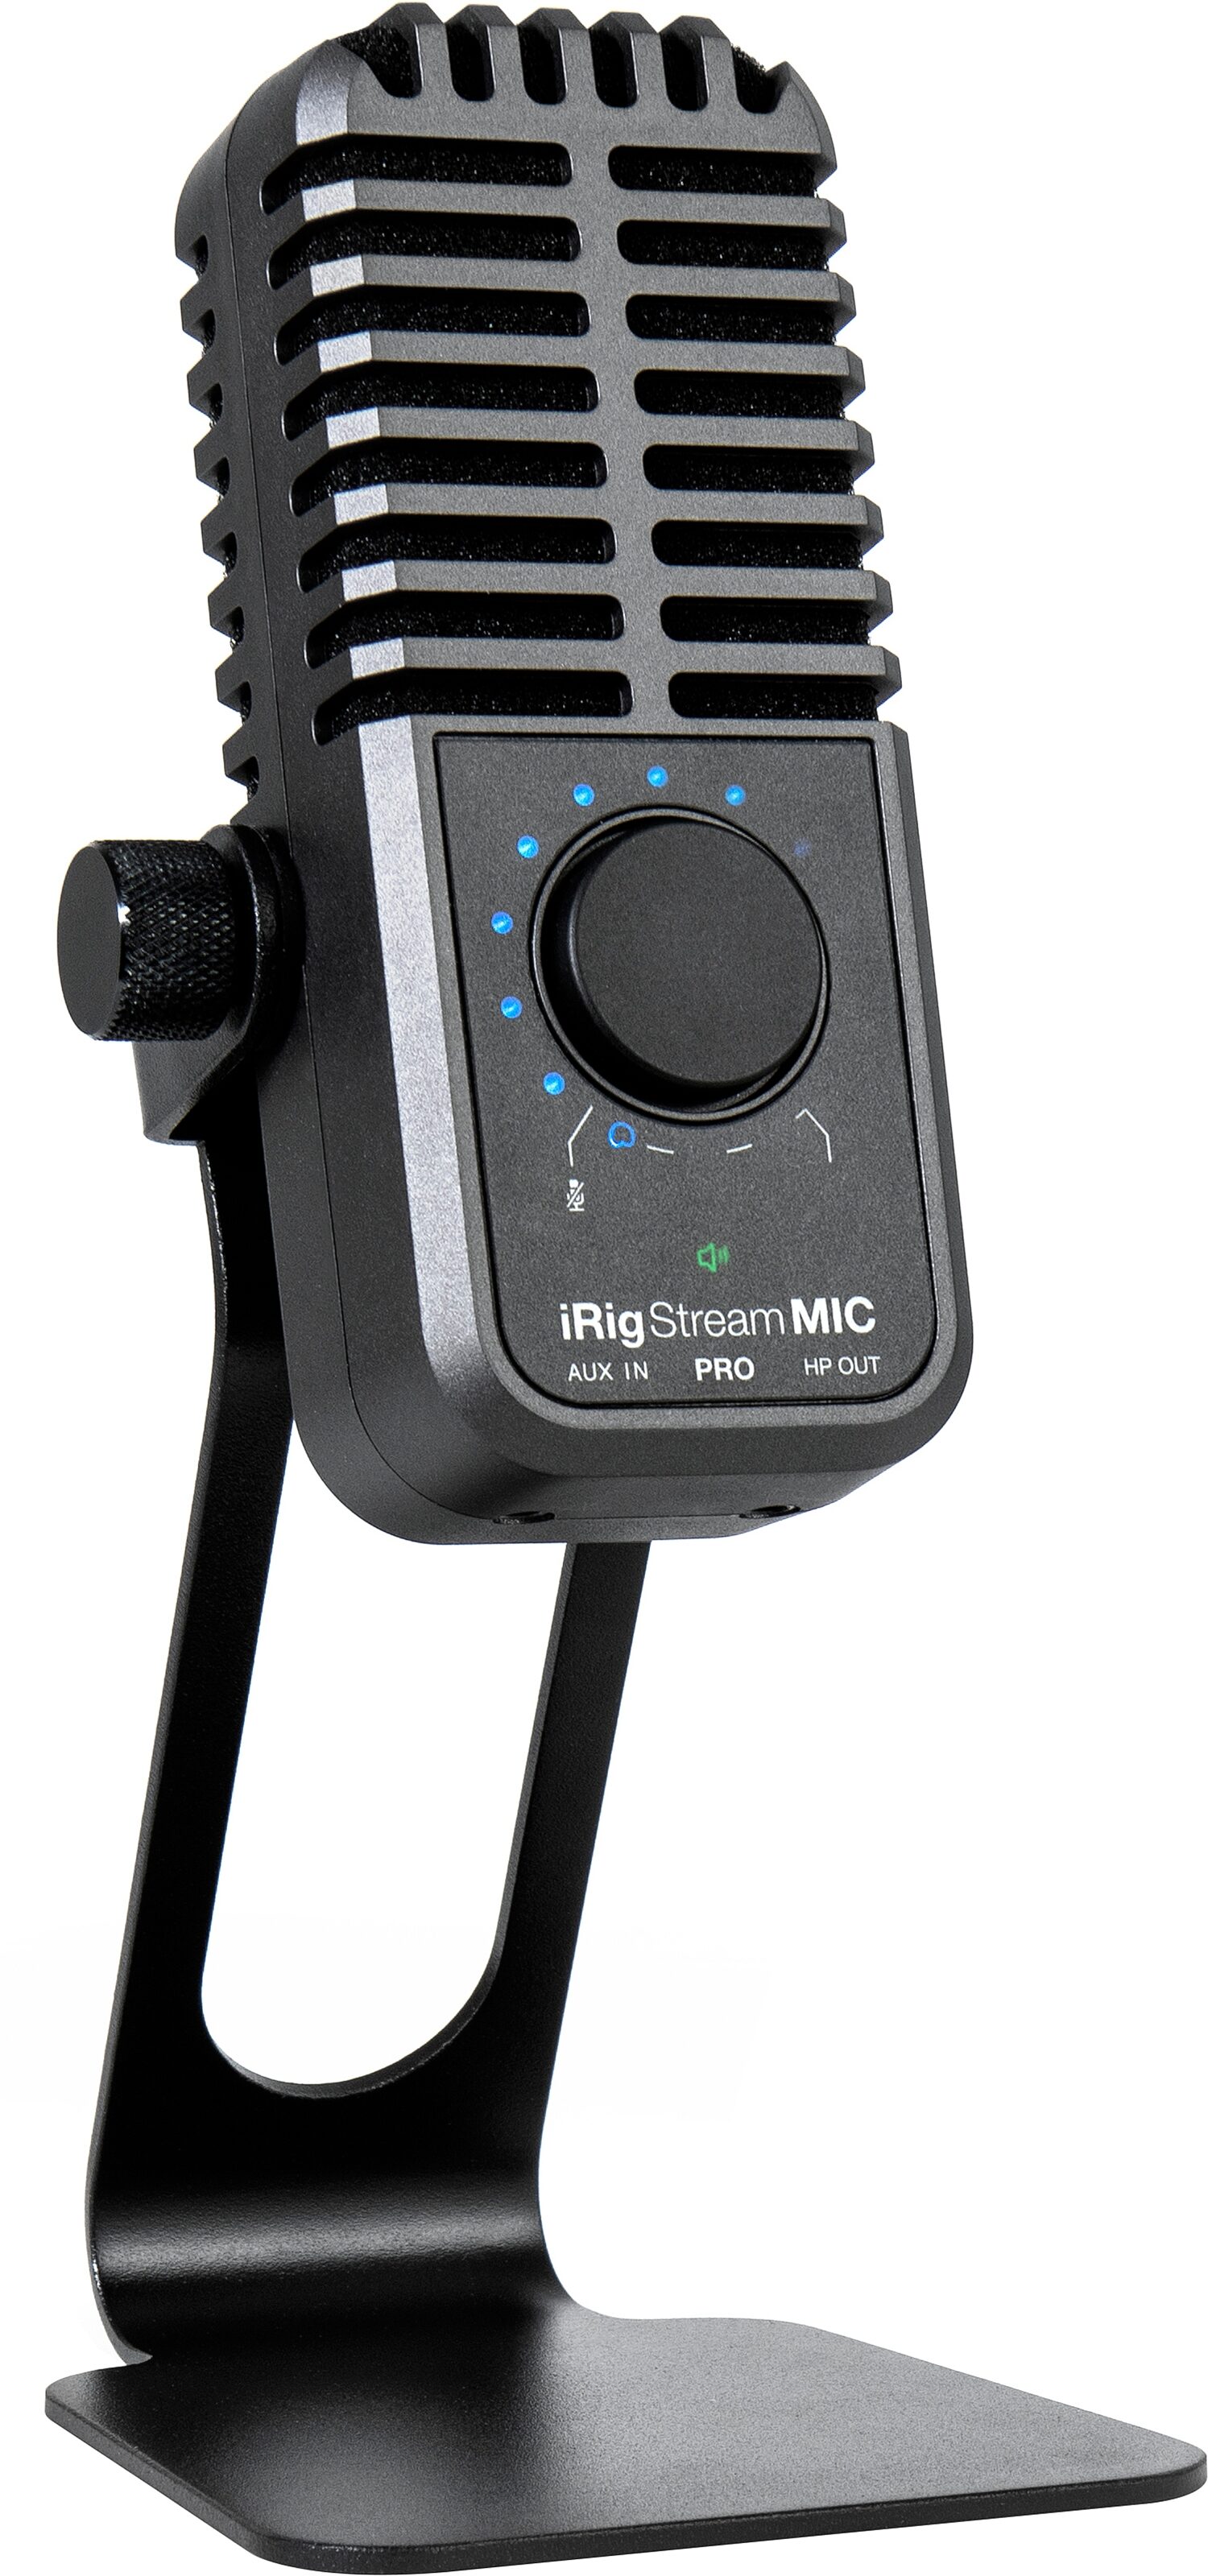 Used IK Multimedia iRig Stream USB Audio Interface